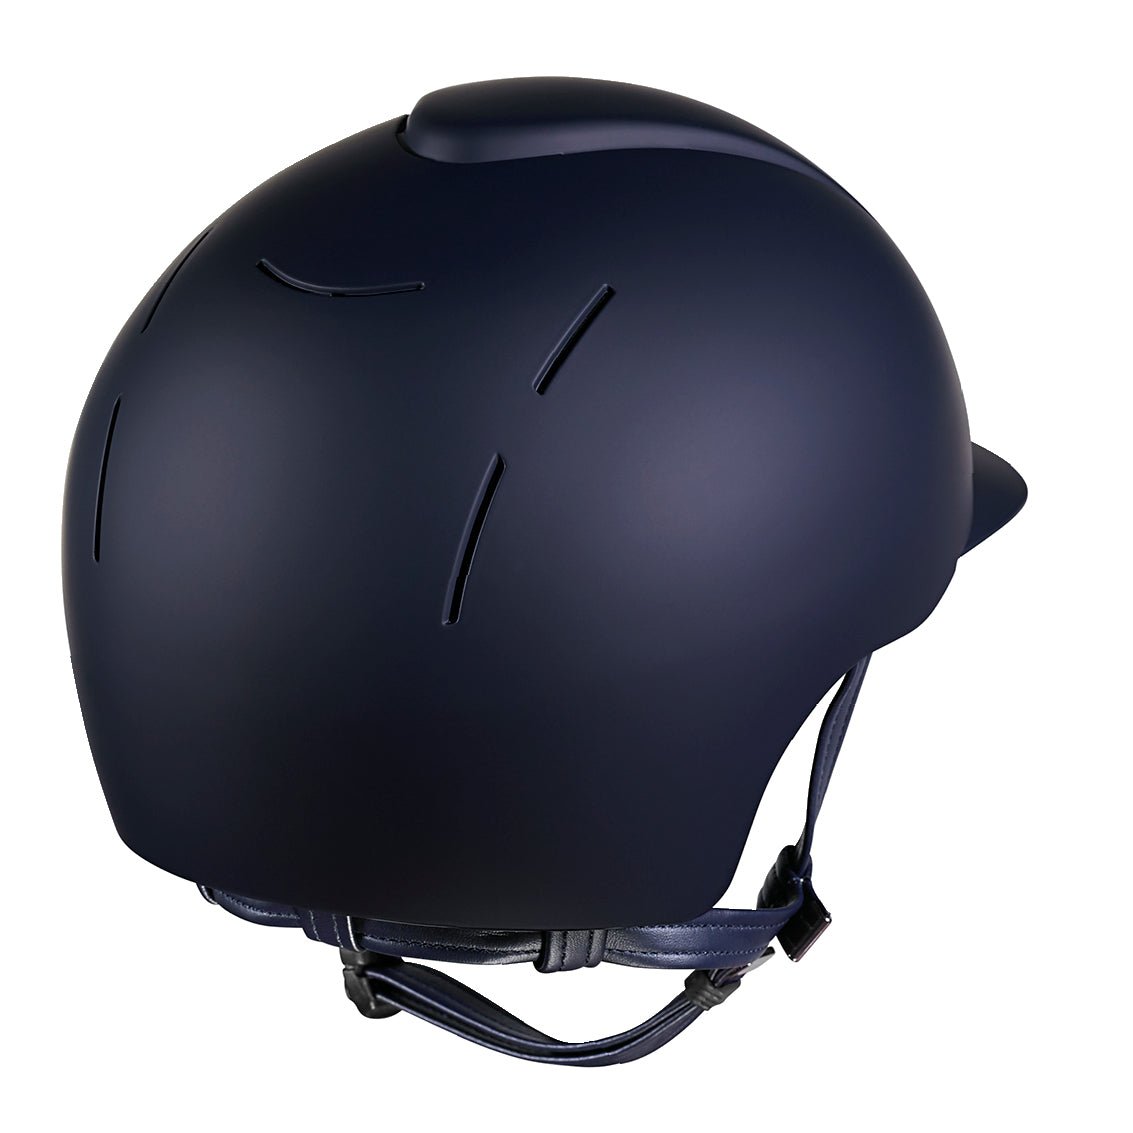 KEP Smart Riding Helmet - Matt Finish - Blue - Medium (52cm-58cm)